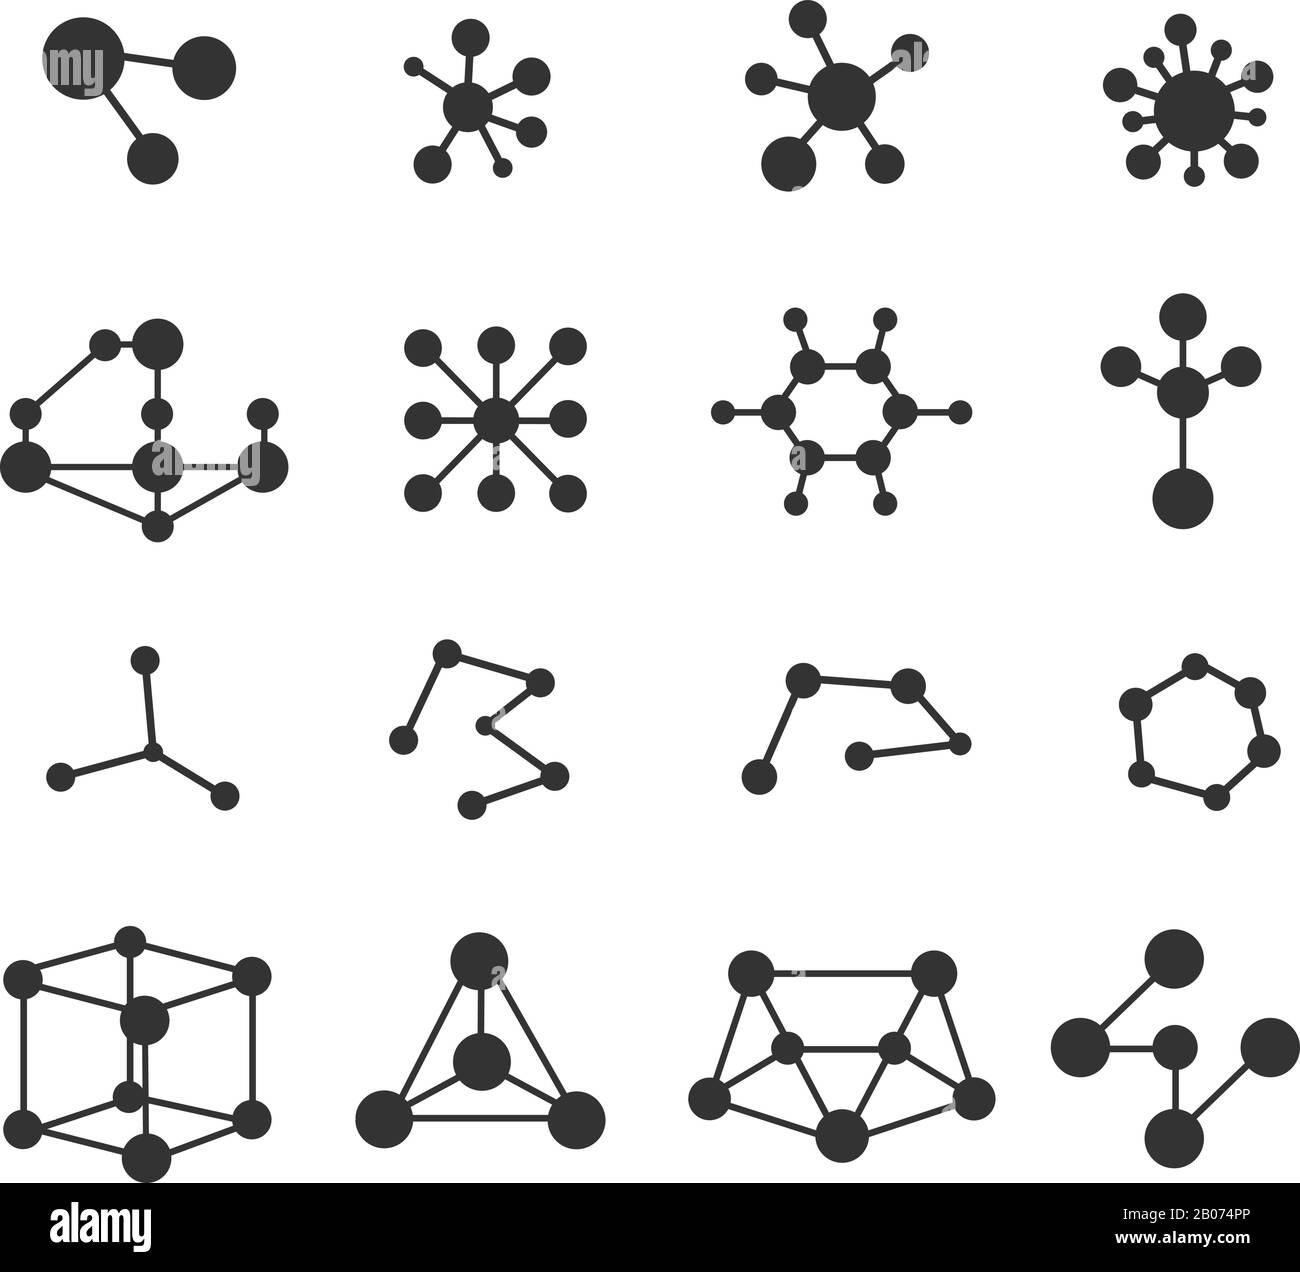 Vektorsatz für Symbole von Molekülen. Atomforschung und chemische Strukturabbildung Stock Vektor